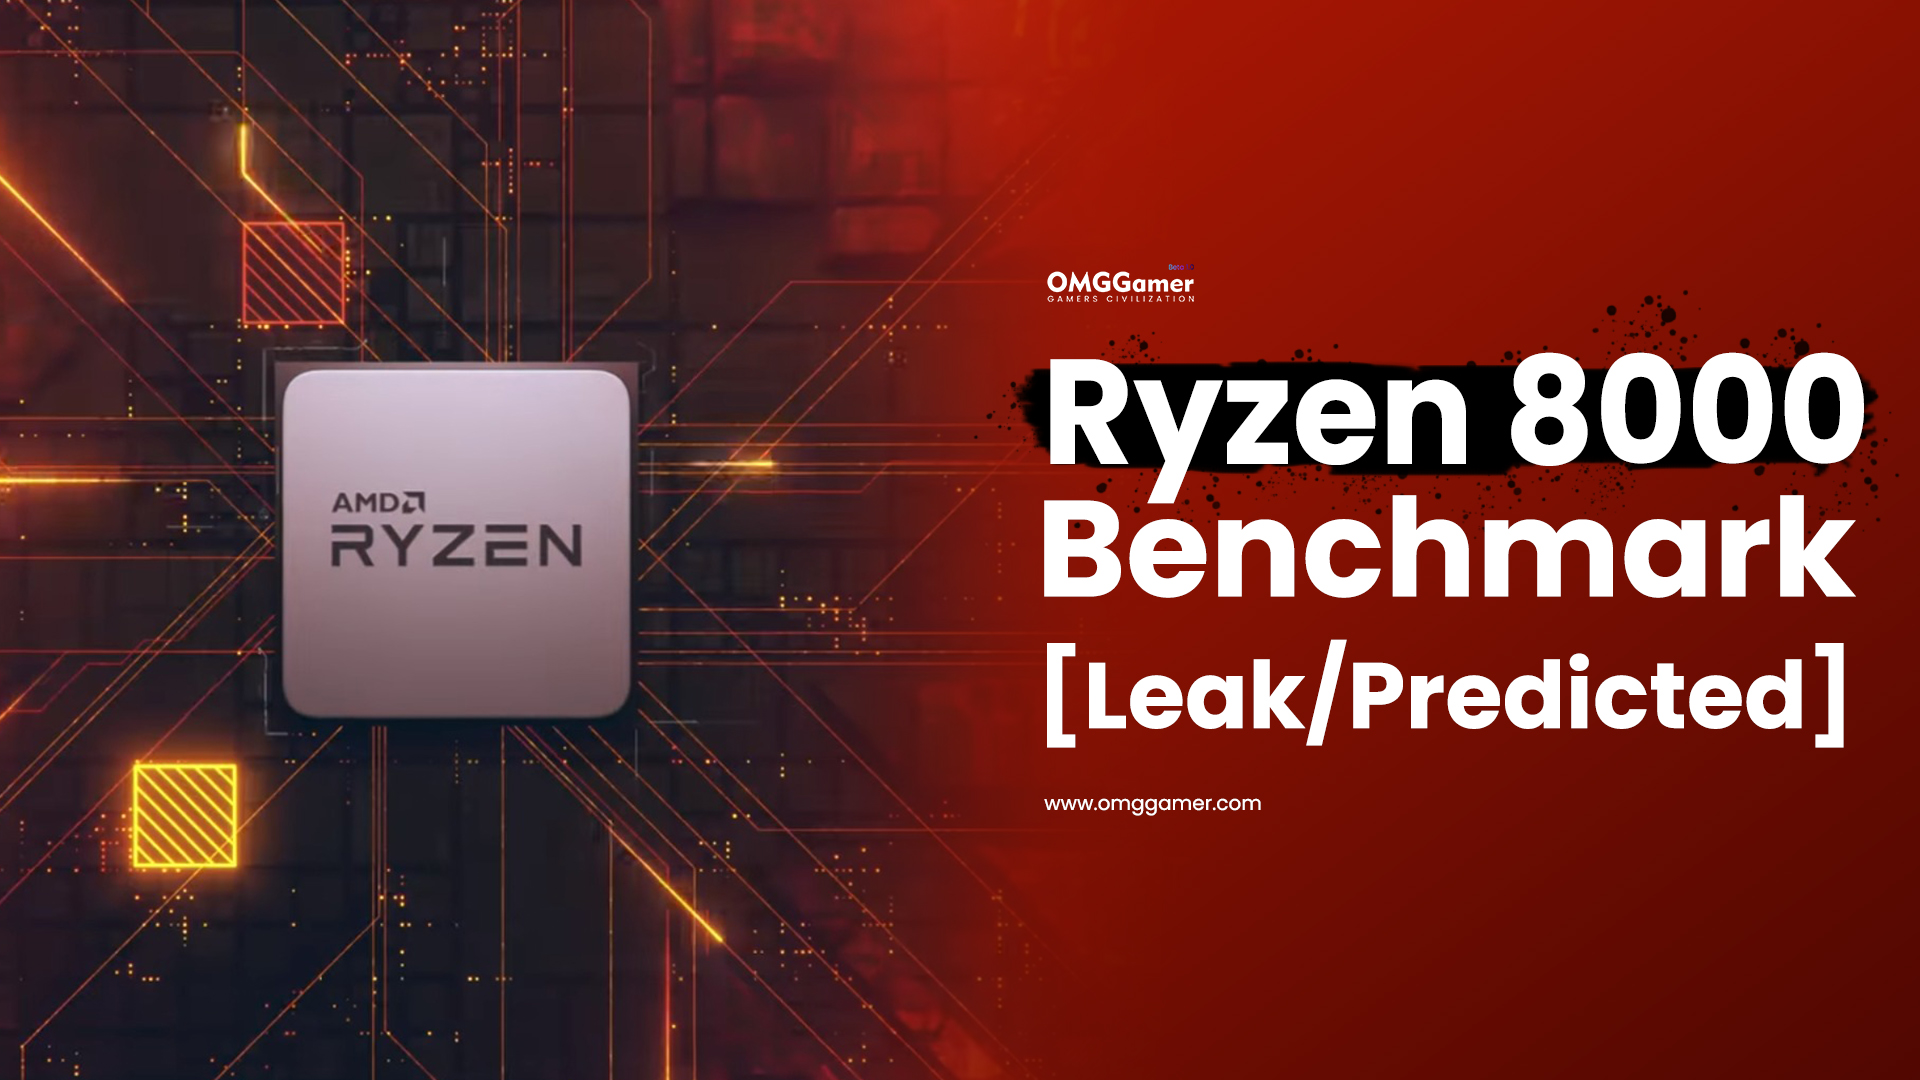 AMD Ryzen 8000 Benchmark [Leak Predicted] 